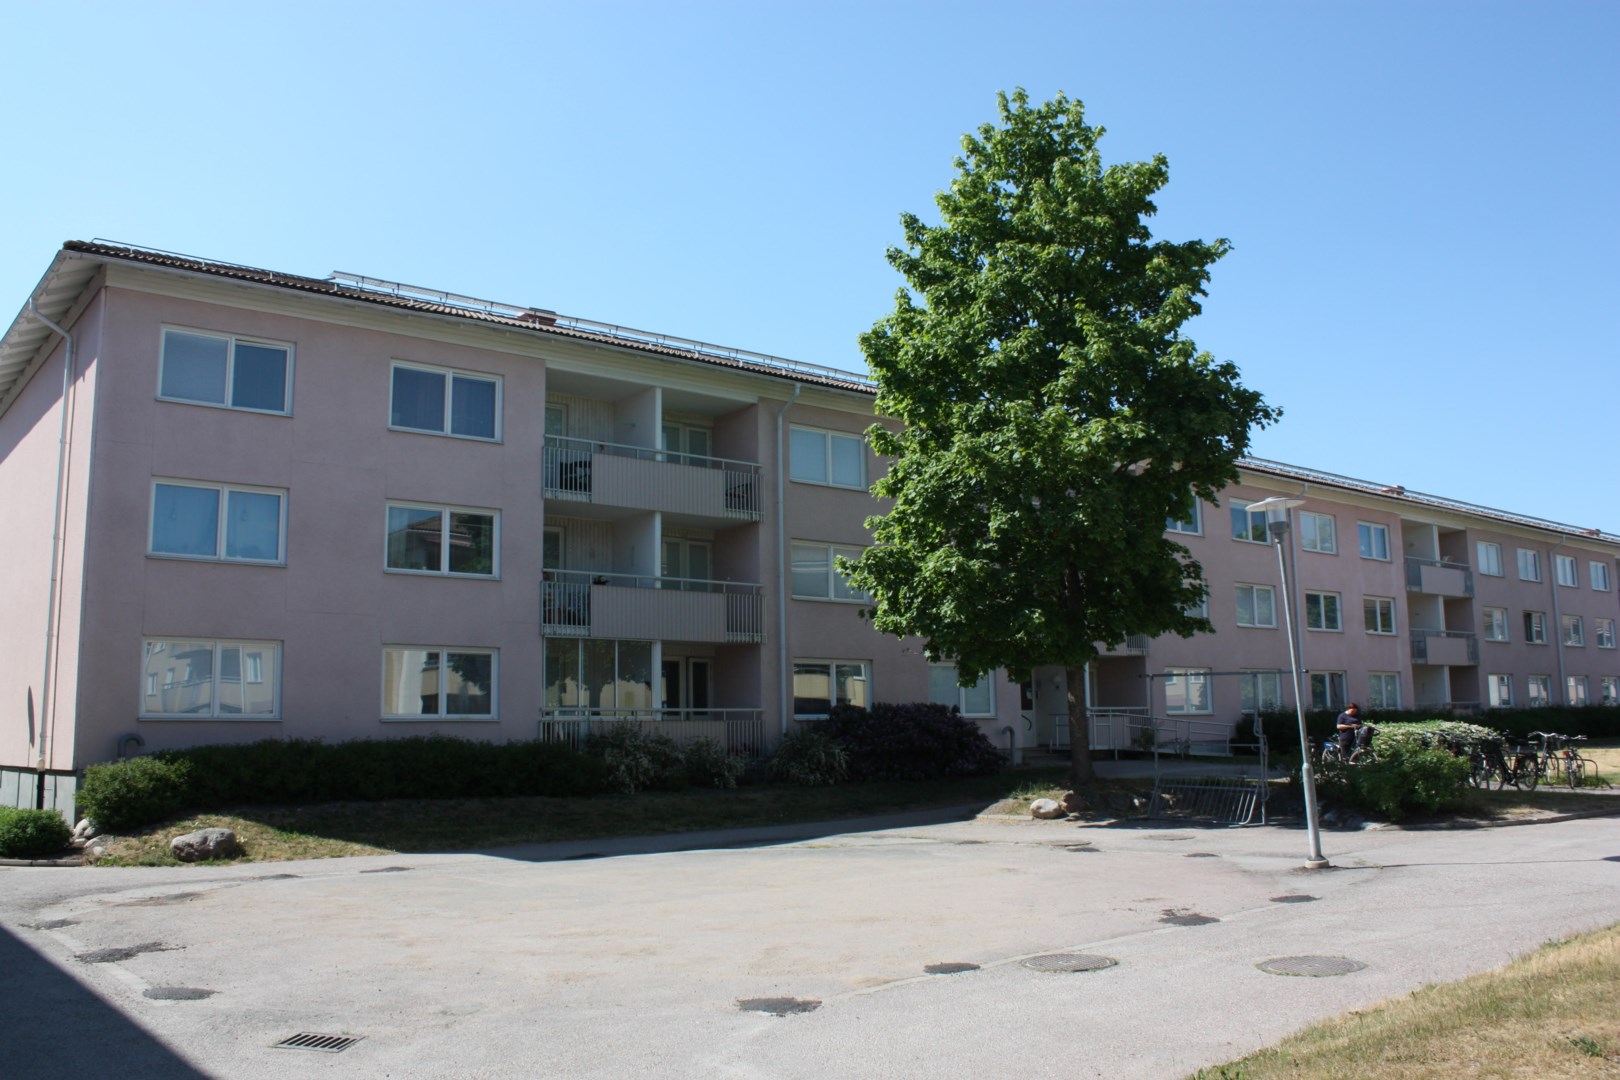 Bostadsrätt i Bjurhovda, Västerås, Västmanland, Knotavägen 18